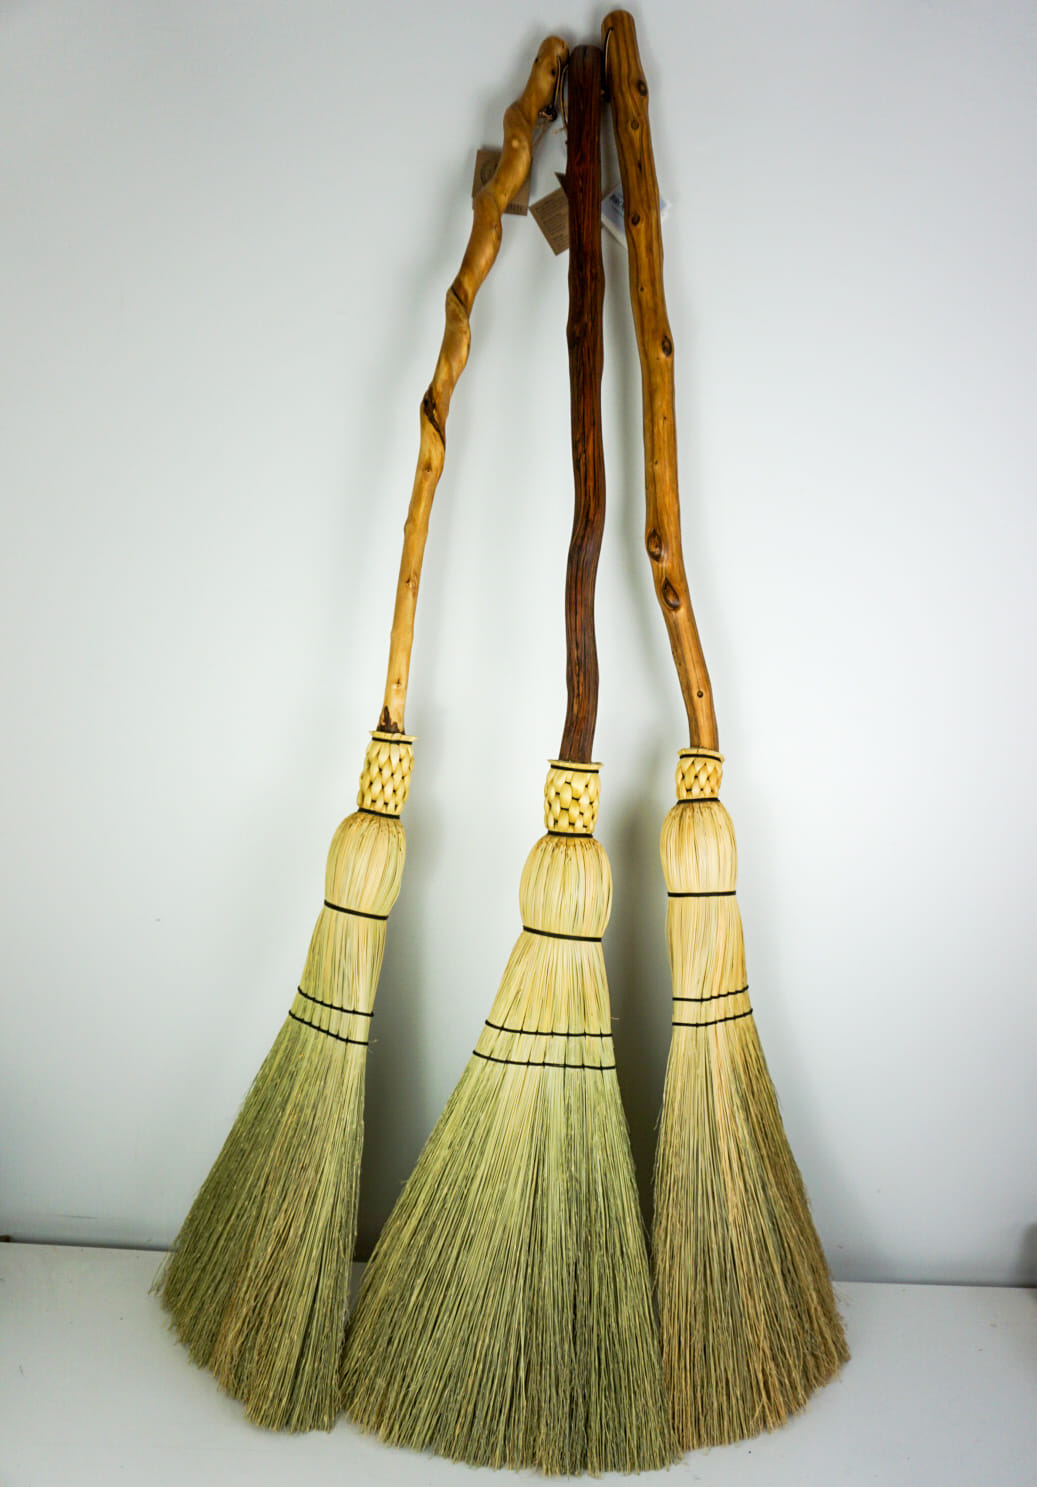 Few-good-brooms